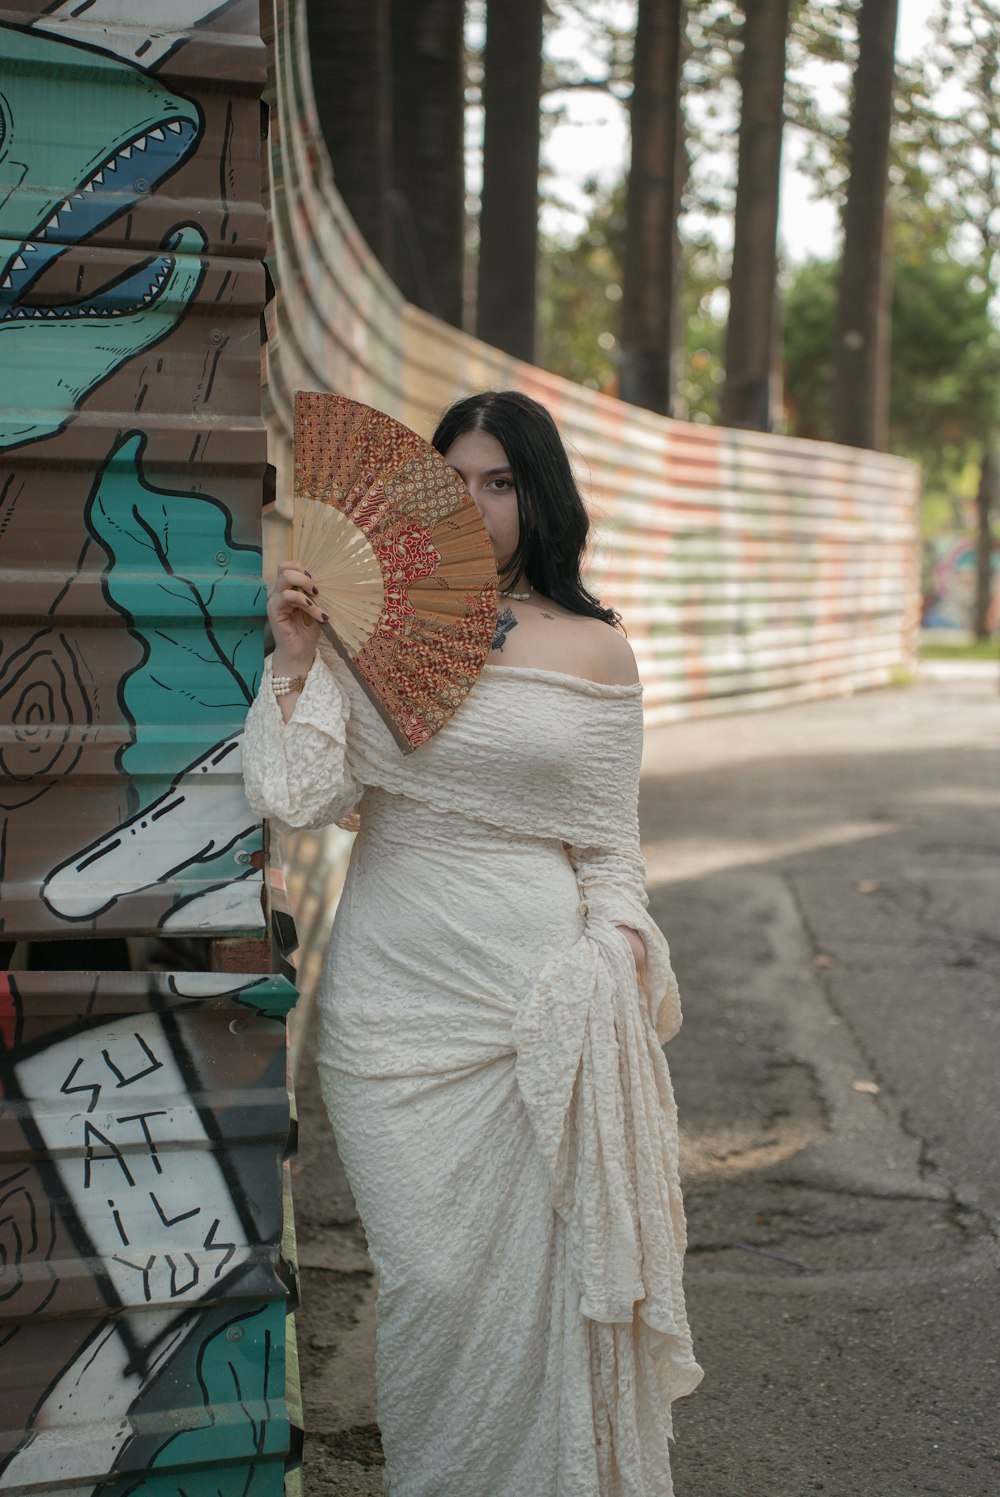 a woman in a white dress holding a fan